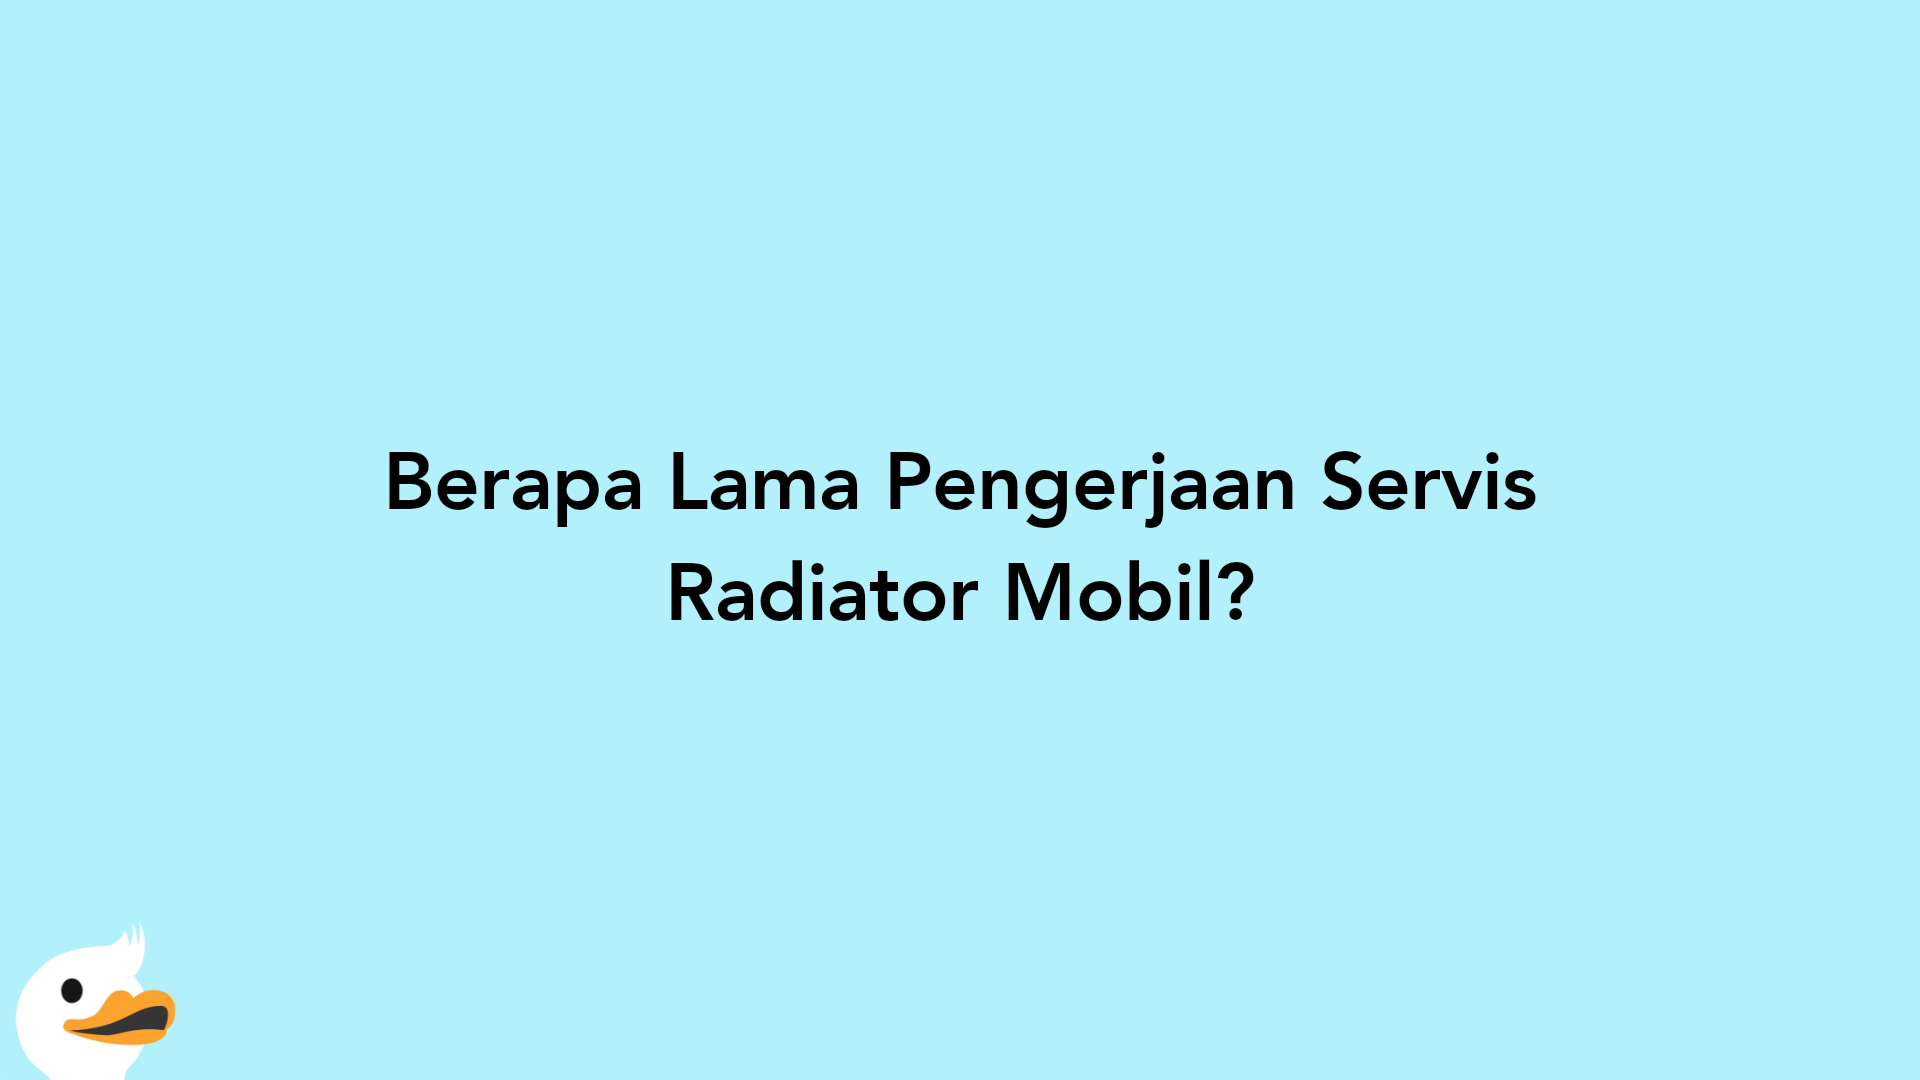 Berapa Lama Pengerjaan Servis Radiator Mobil?